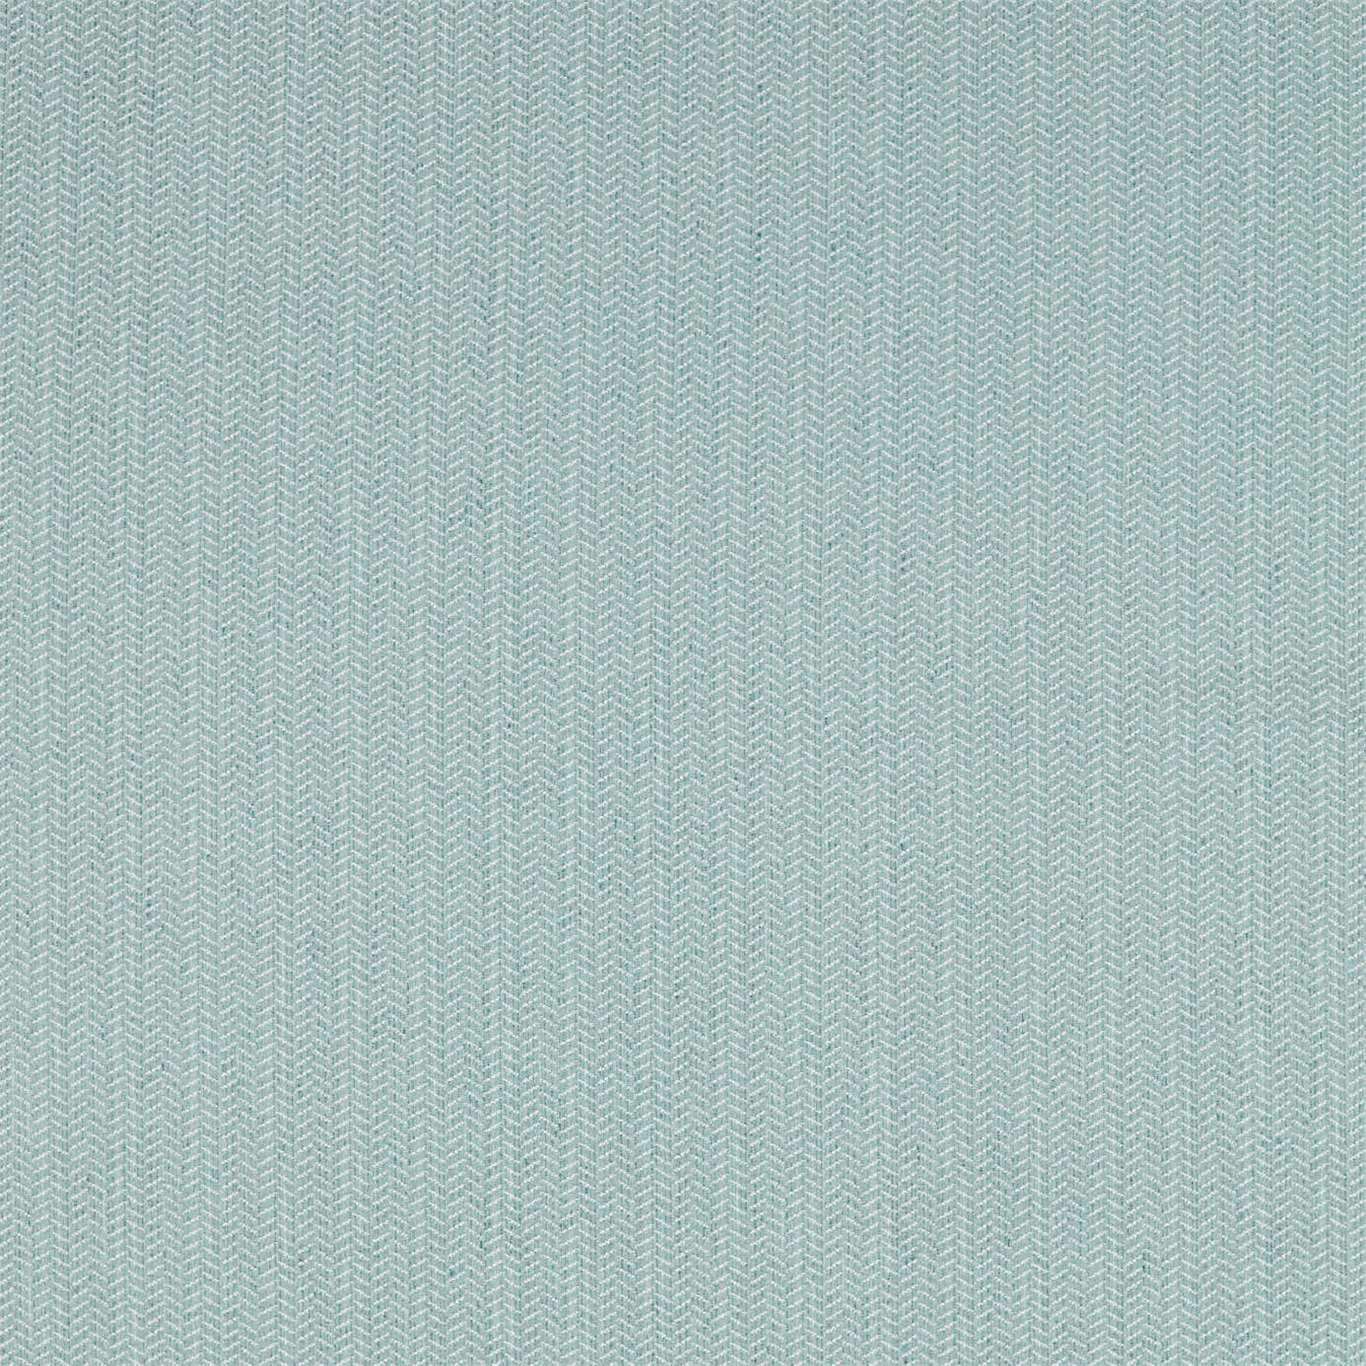 Dune Fabric by Sanderson - DEBW236579 - Teal